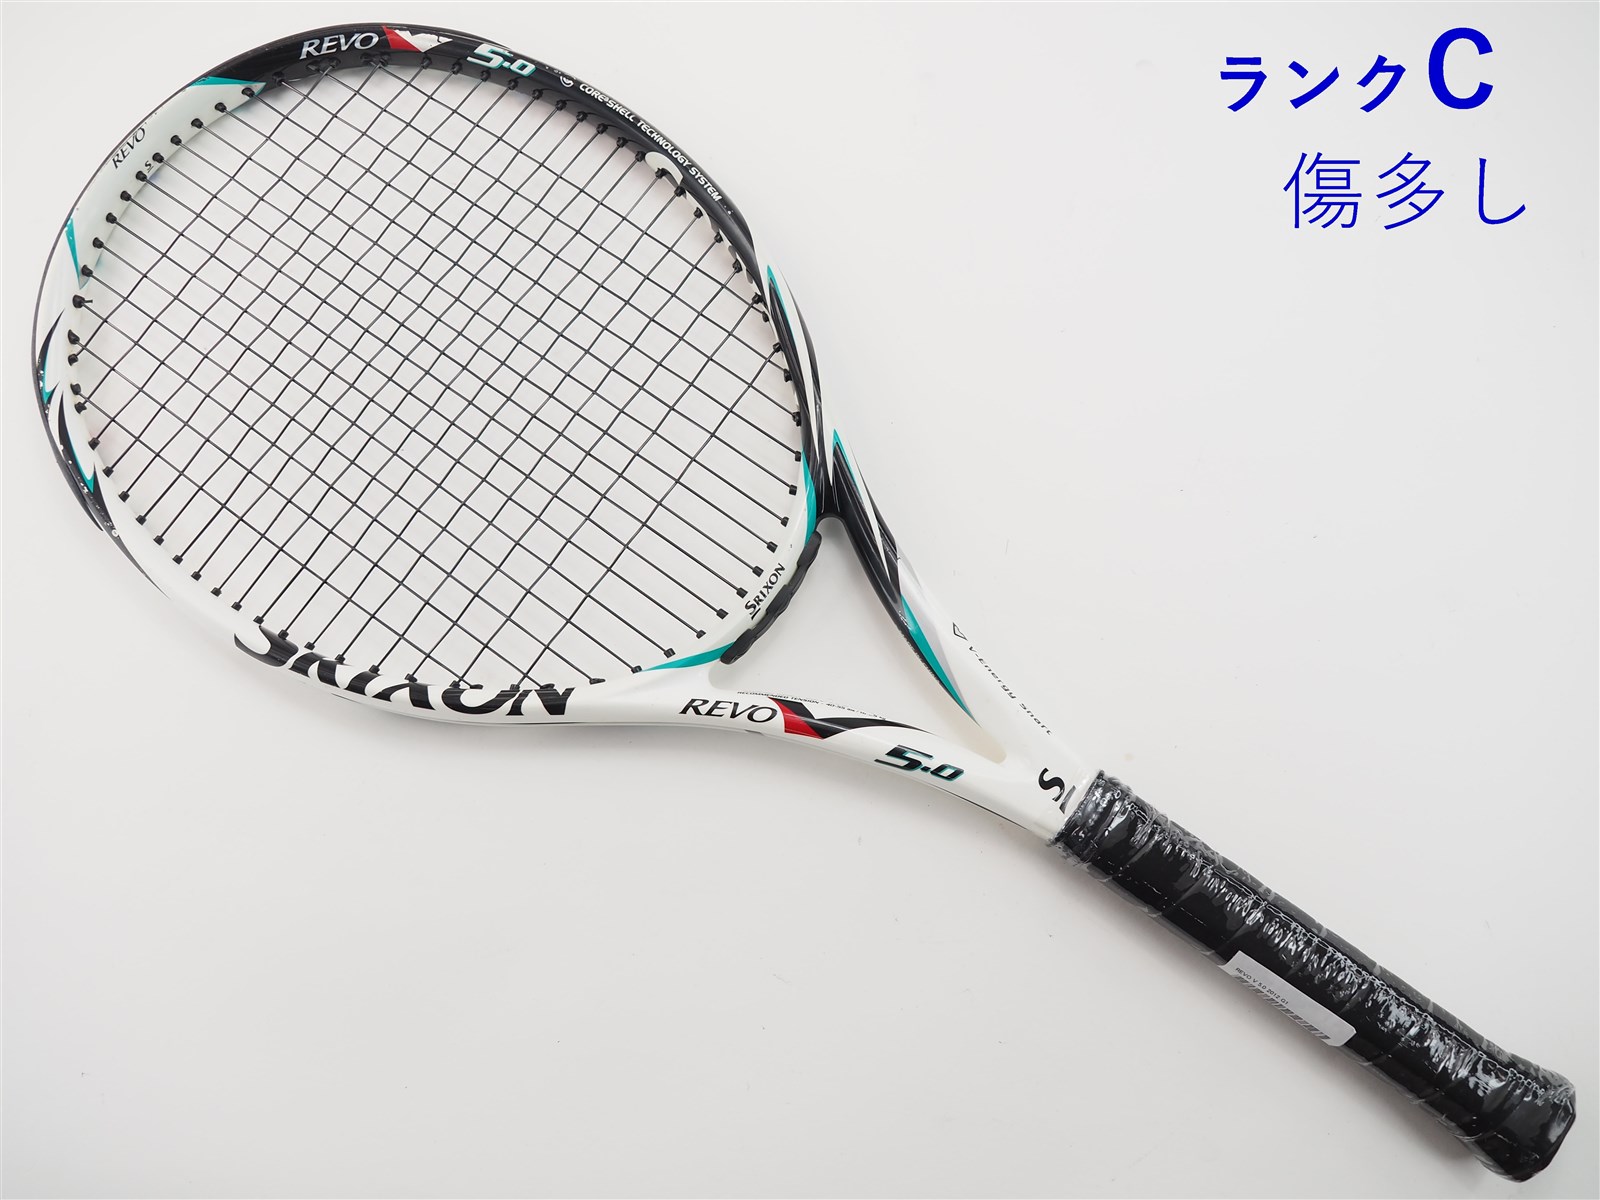 テニスラケット スリクソン レヴォ ブイ 5.0 2012年モデル (G1)SRIXON